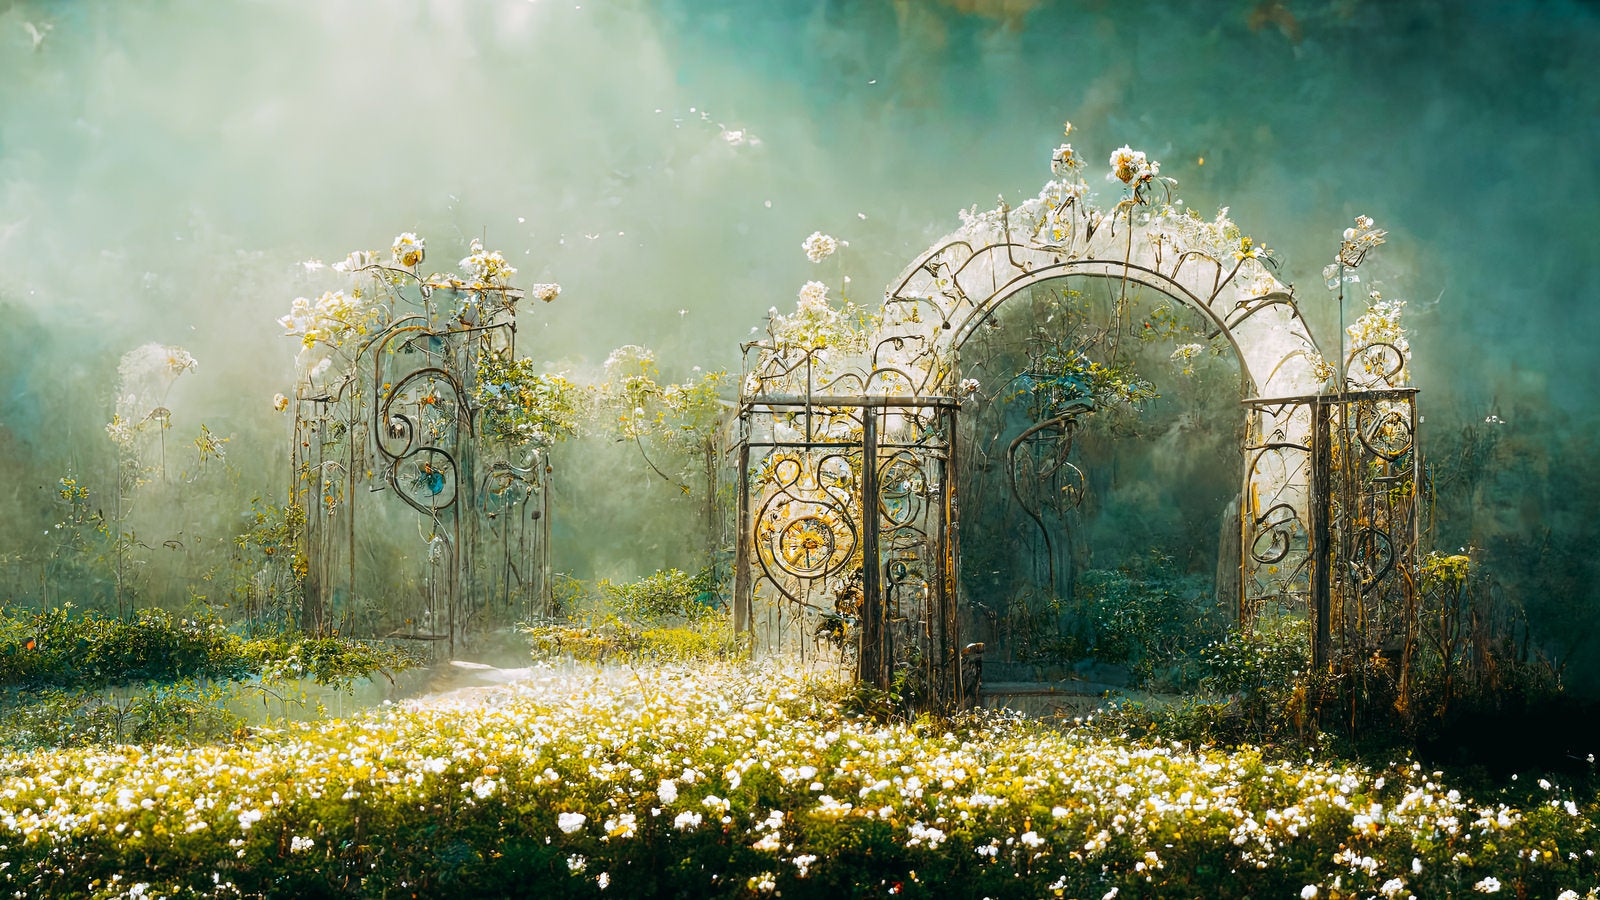 「妖精の国へと誘う門扉」の写真